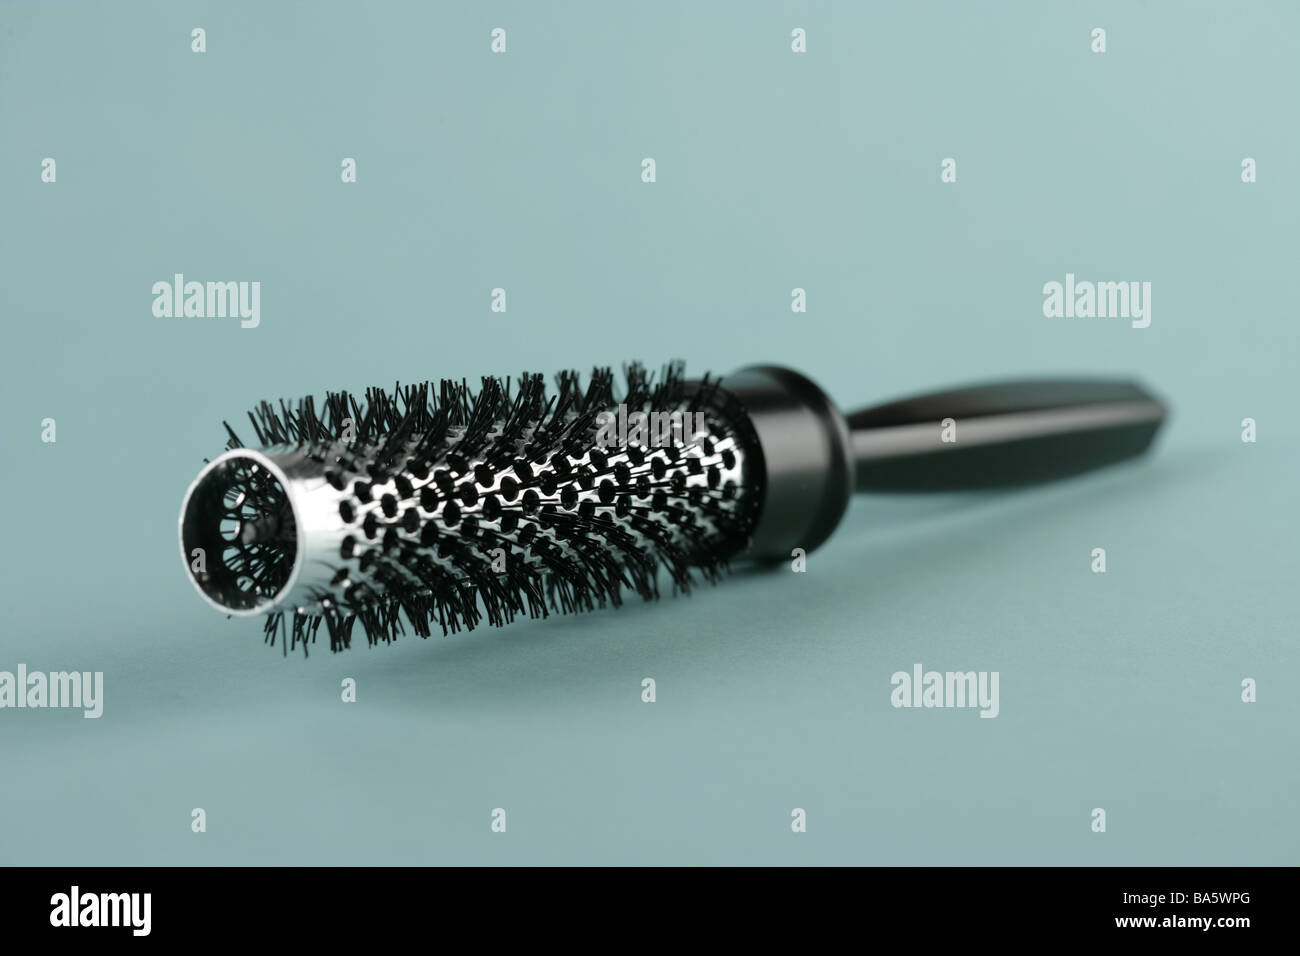 Runde Bürste Haarbürste Haar Trockner-Pinsel Pinsel Symbol Frisur Föhnen  Fönen Haar-Styling-Frisur-Konzept-Friseur Stockfotografie - Alamy